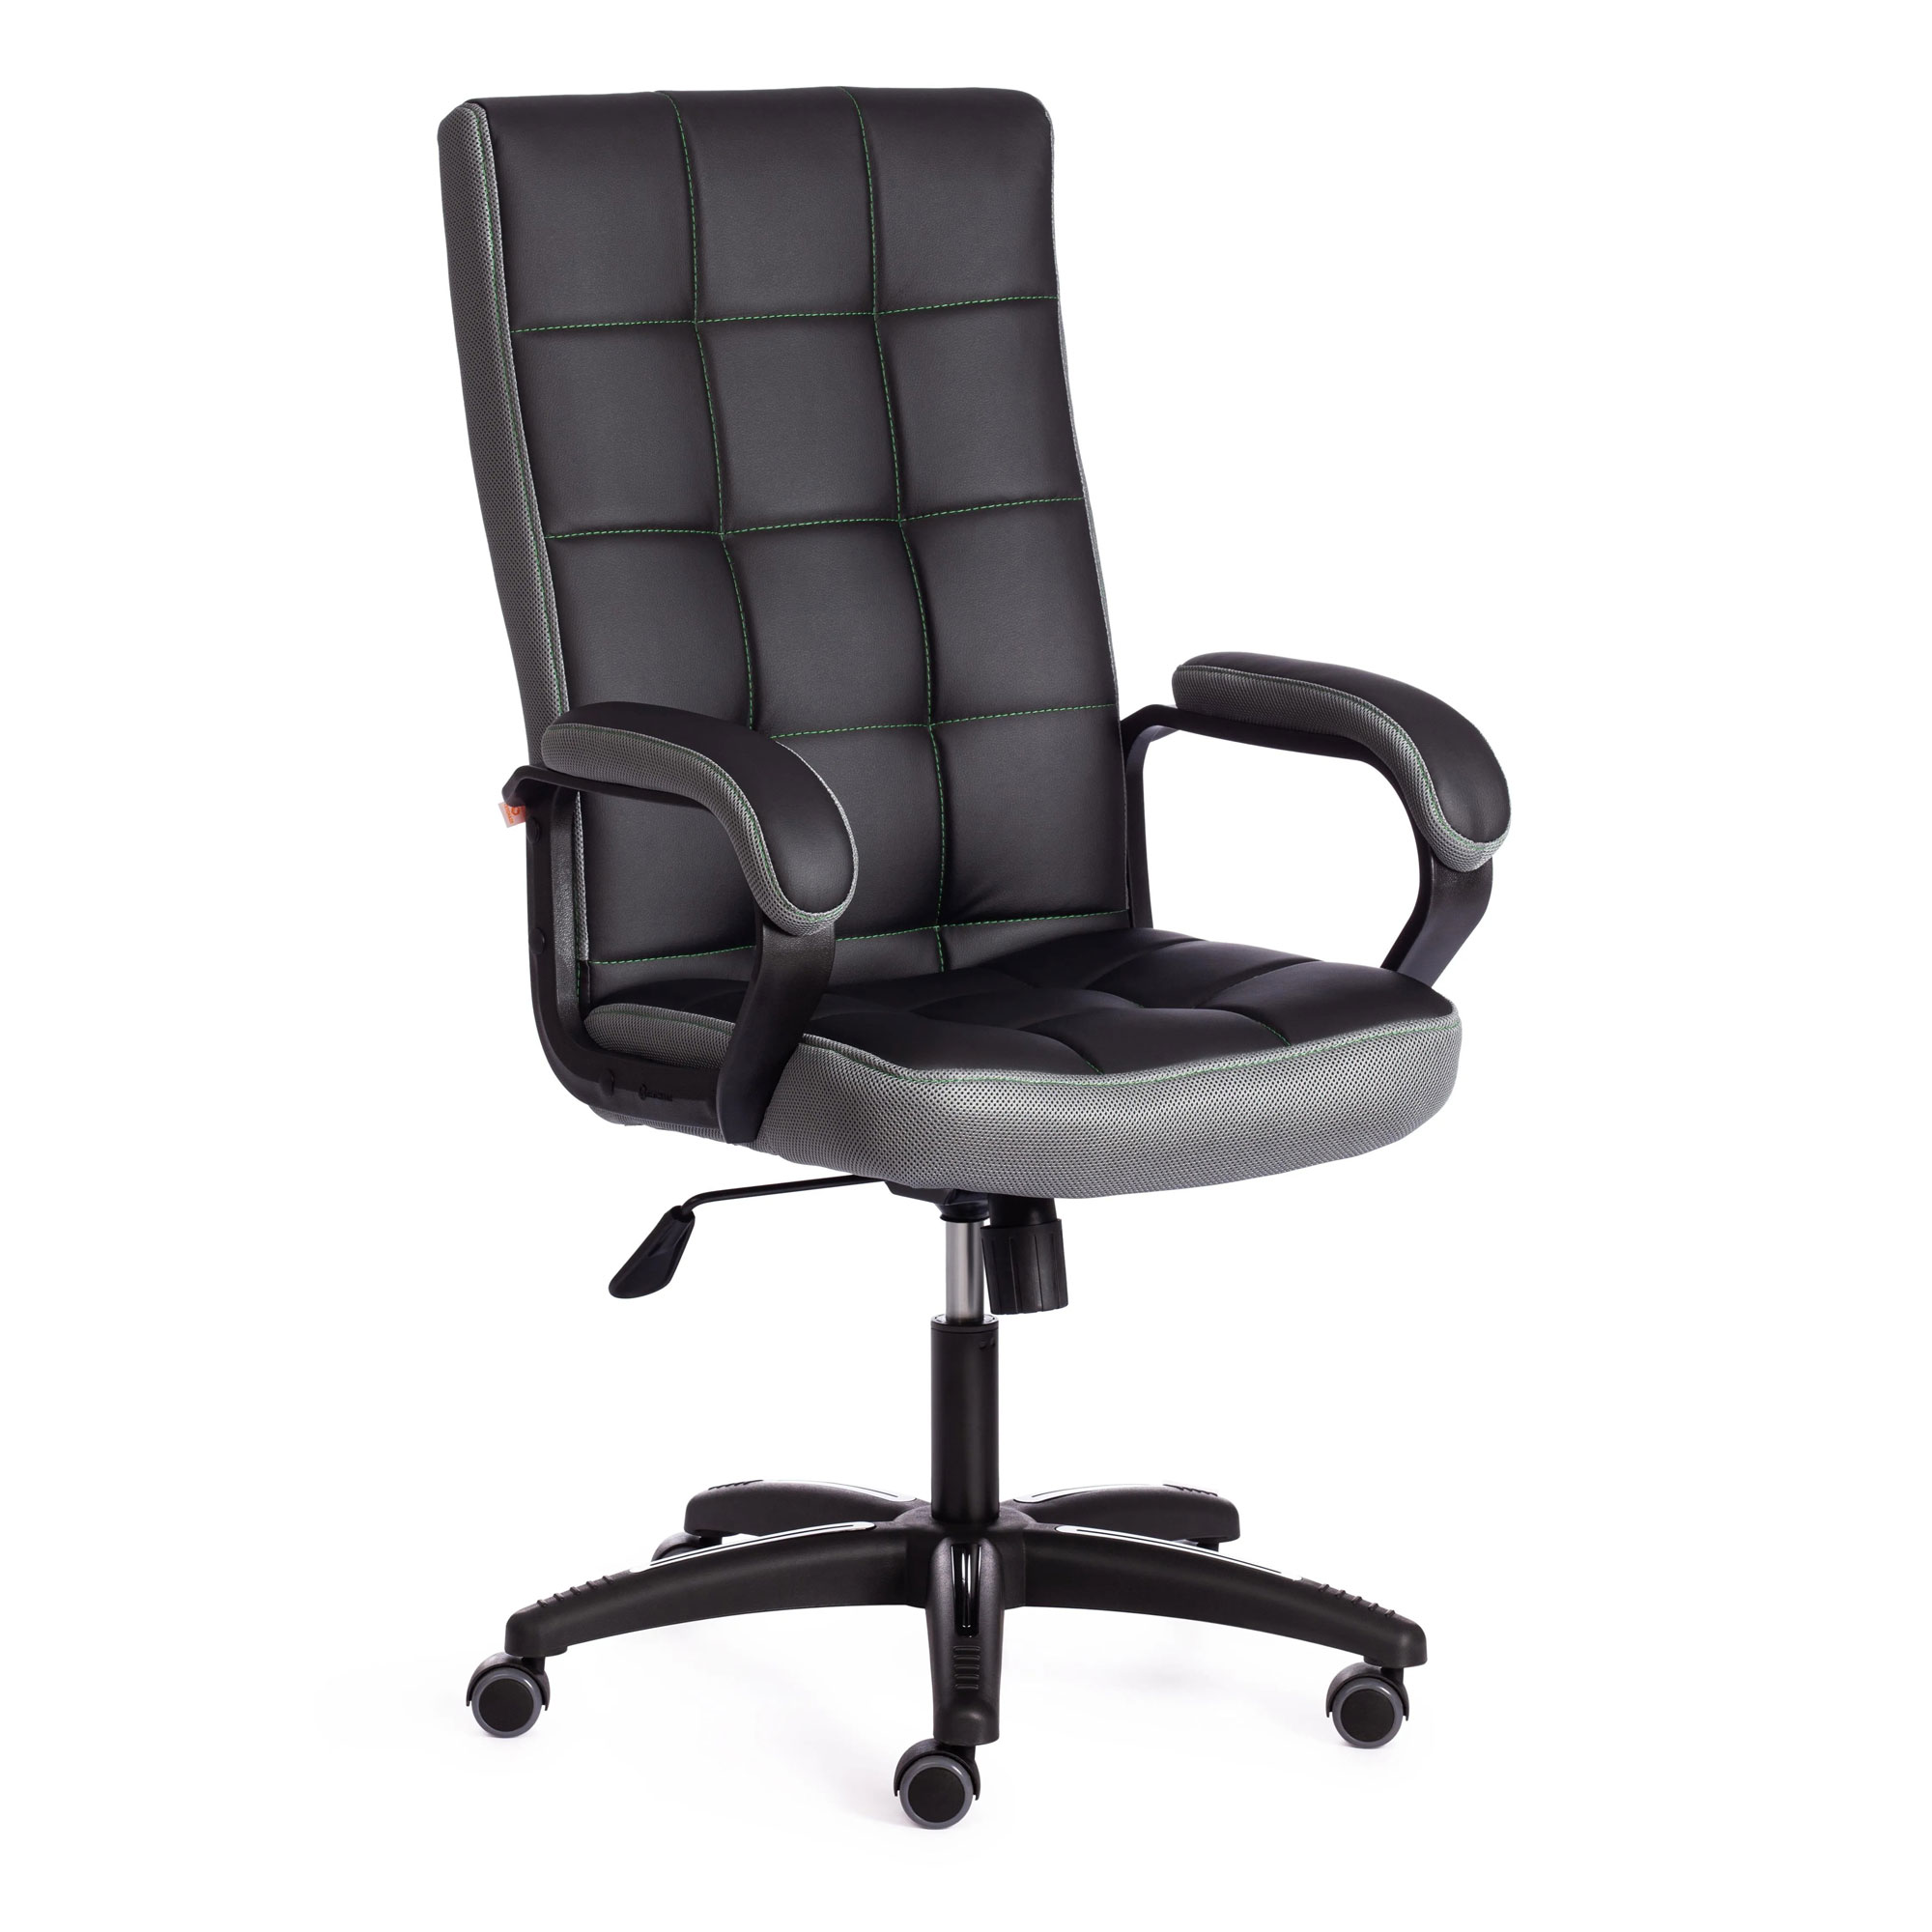 Кресло компьютерное TC искусственная кожа чёрное с серым 61х47х126 см кресло компьютерное tc neo искусственная кожа чёрное с красным 64х49х122 см